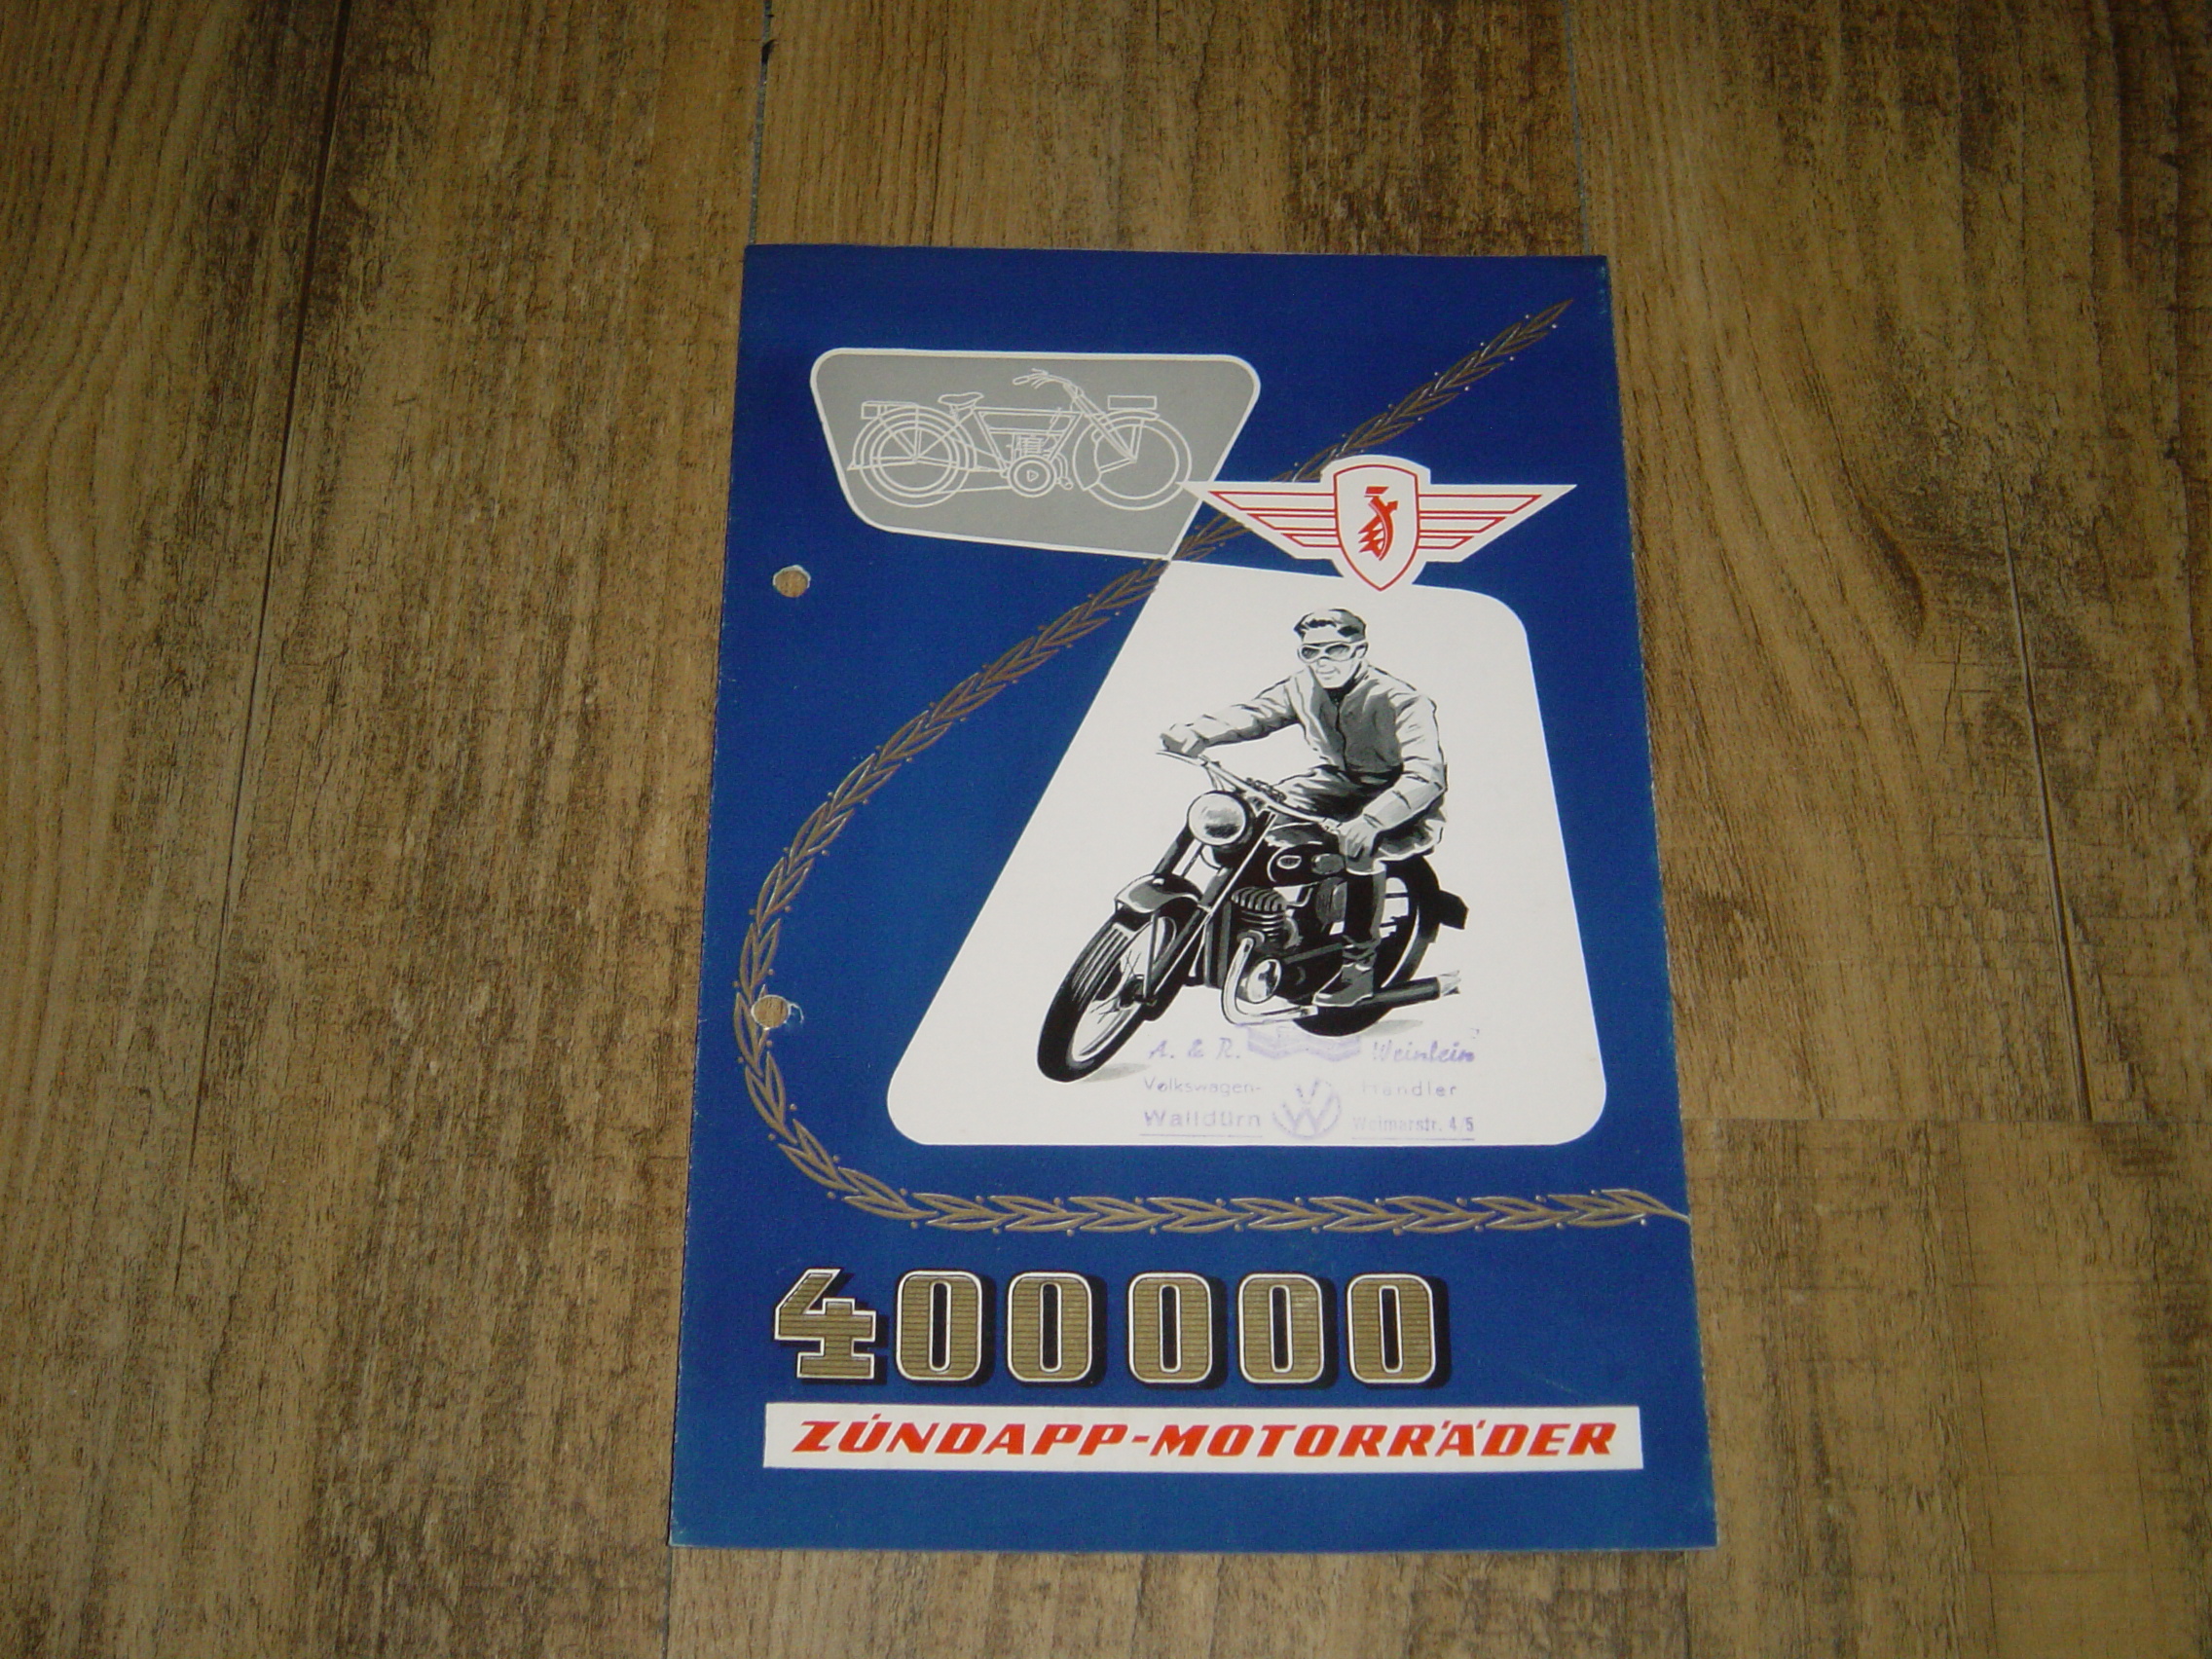 Promotional brochure D - 400.000 Zündapp Motorräder